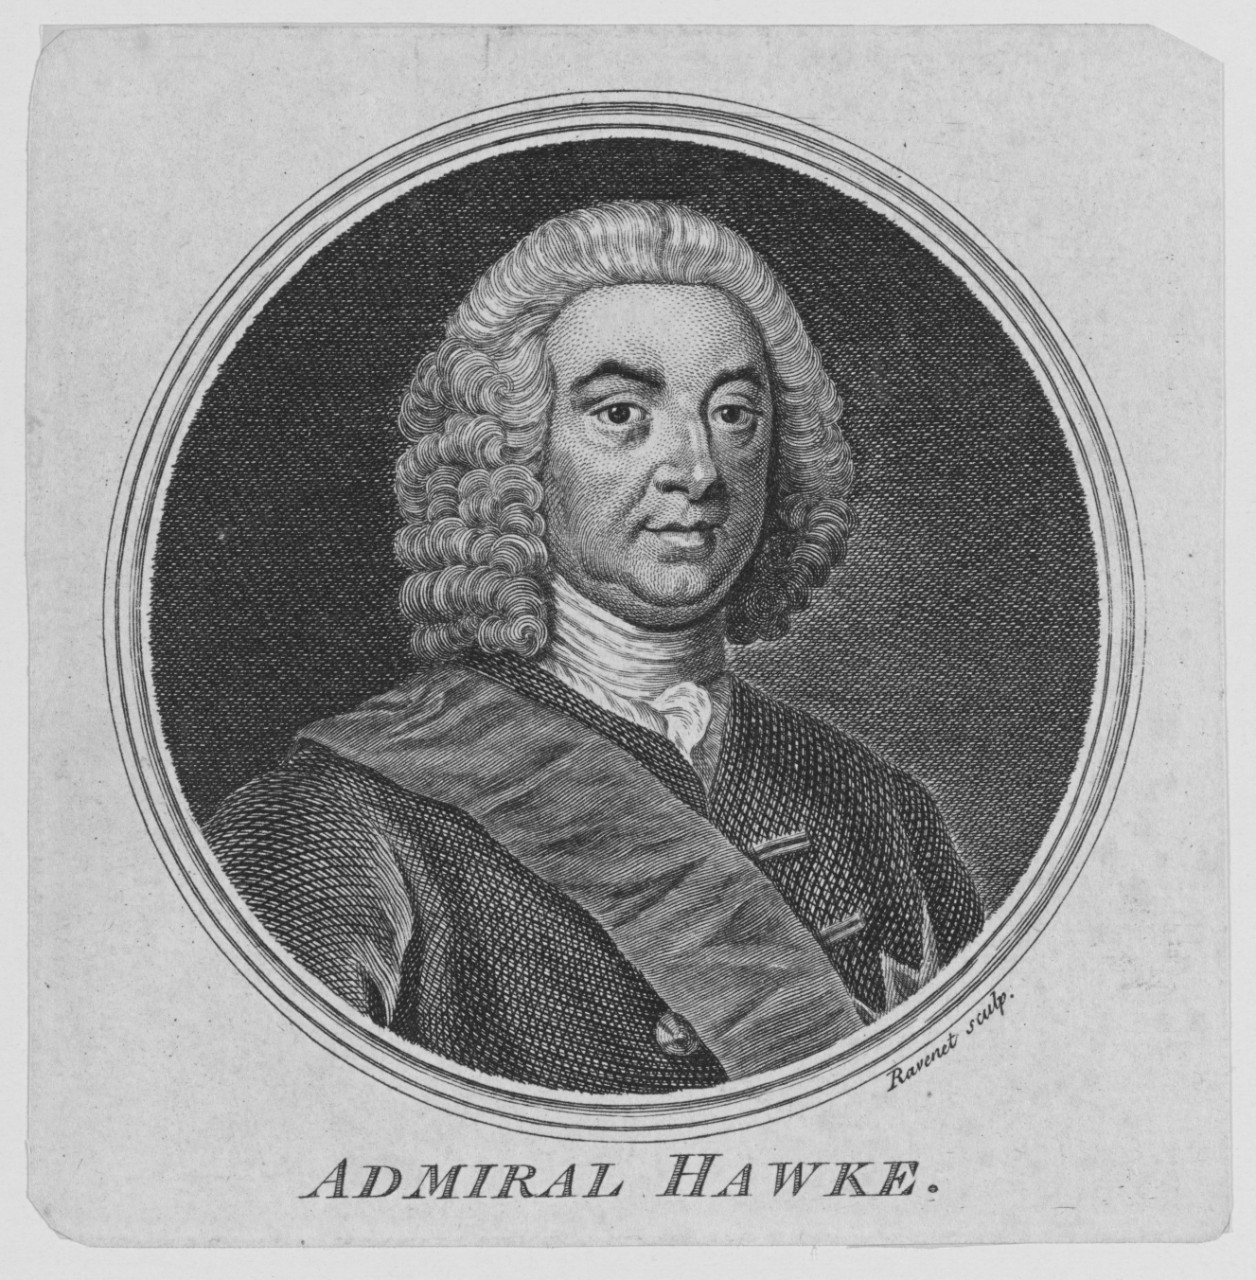 Admiral hawke